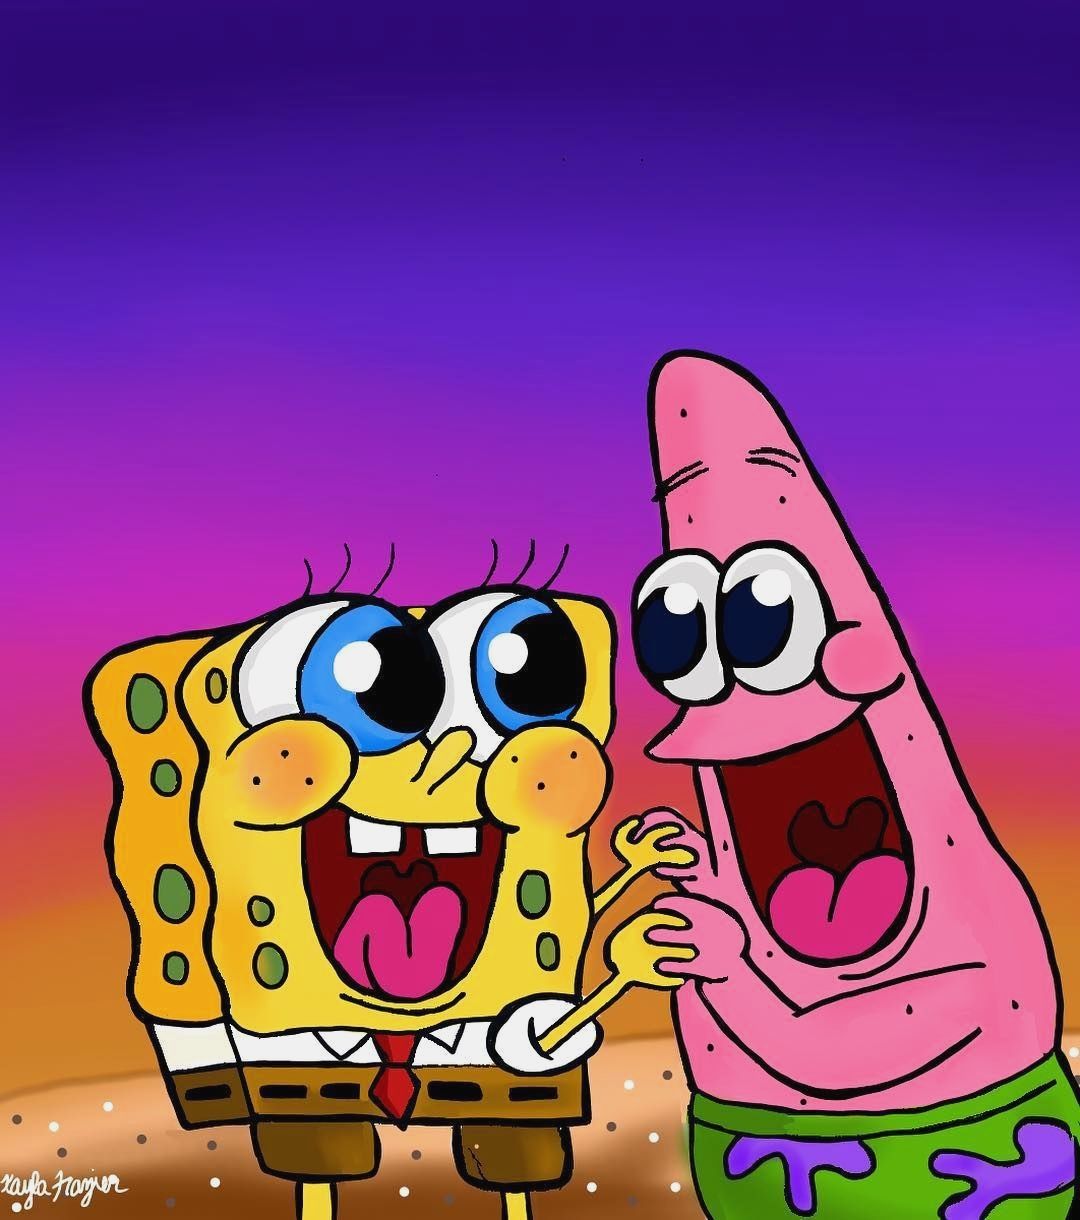 Nếu bạn là một fan hâm mộ của Spongebob, hãy tải ngay hình nền Spongebob HD để trang trí cho điện thoại hoặc máy tính của mình. Hình ảnh sáng tạo và tươi sáng sẽ khiến bạn cảm thấy vui vẻ và hạnh phúc khi nhìn vào chúng.